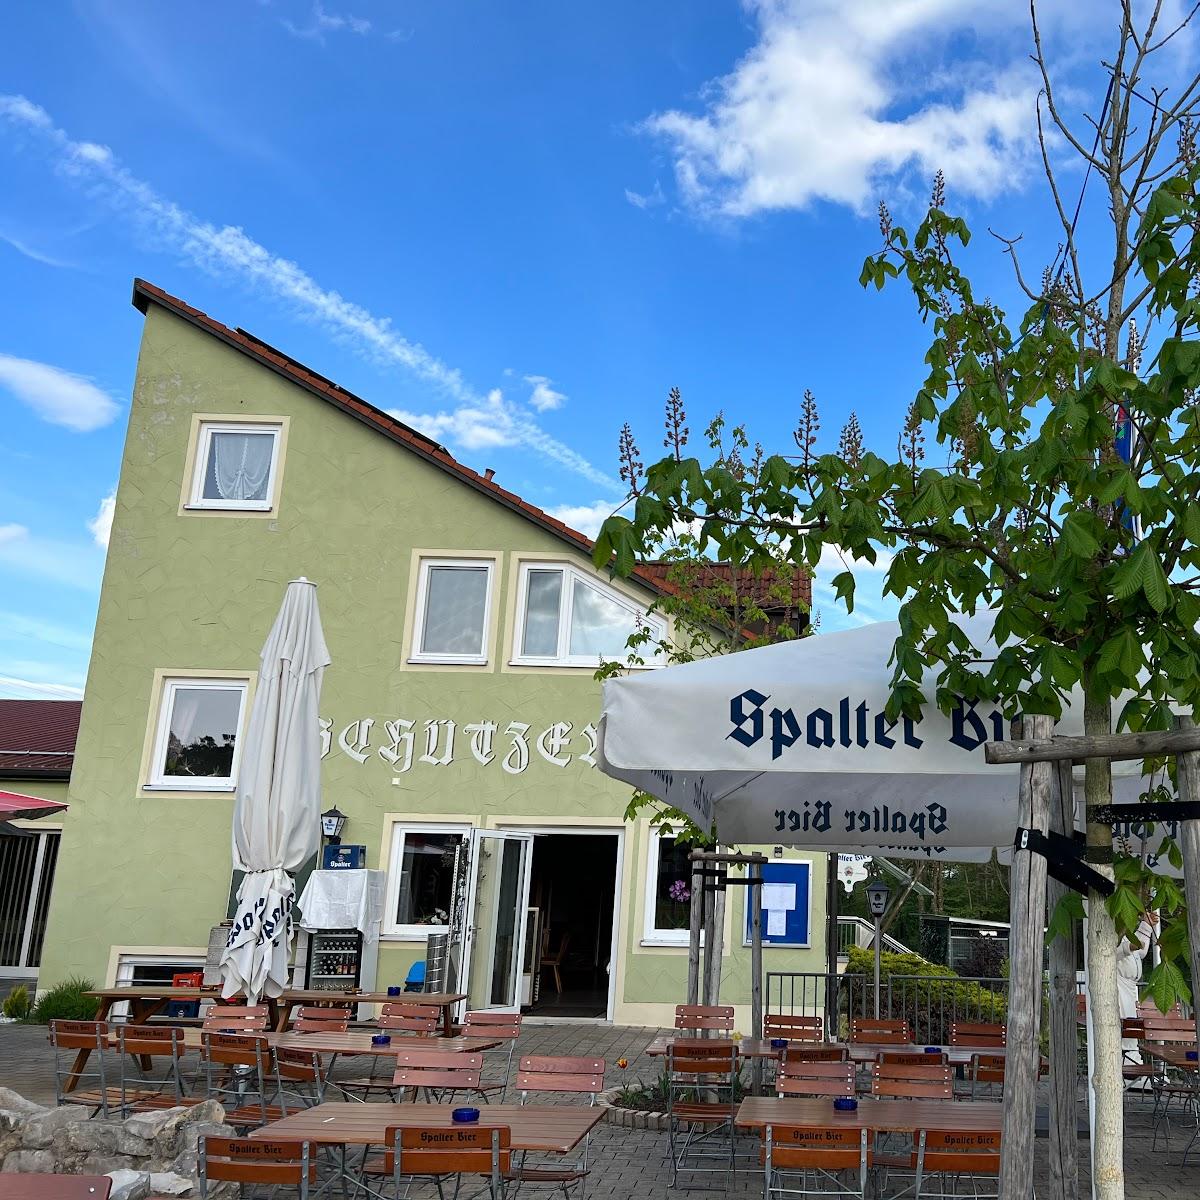 Restaurant "Schützenstüberl am Brombachsee" in Pleinfeld